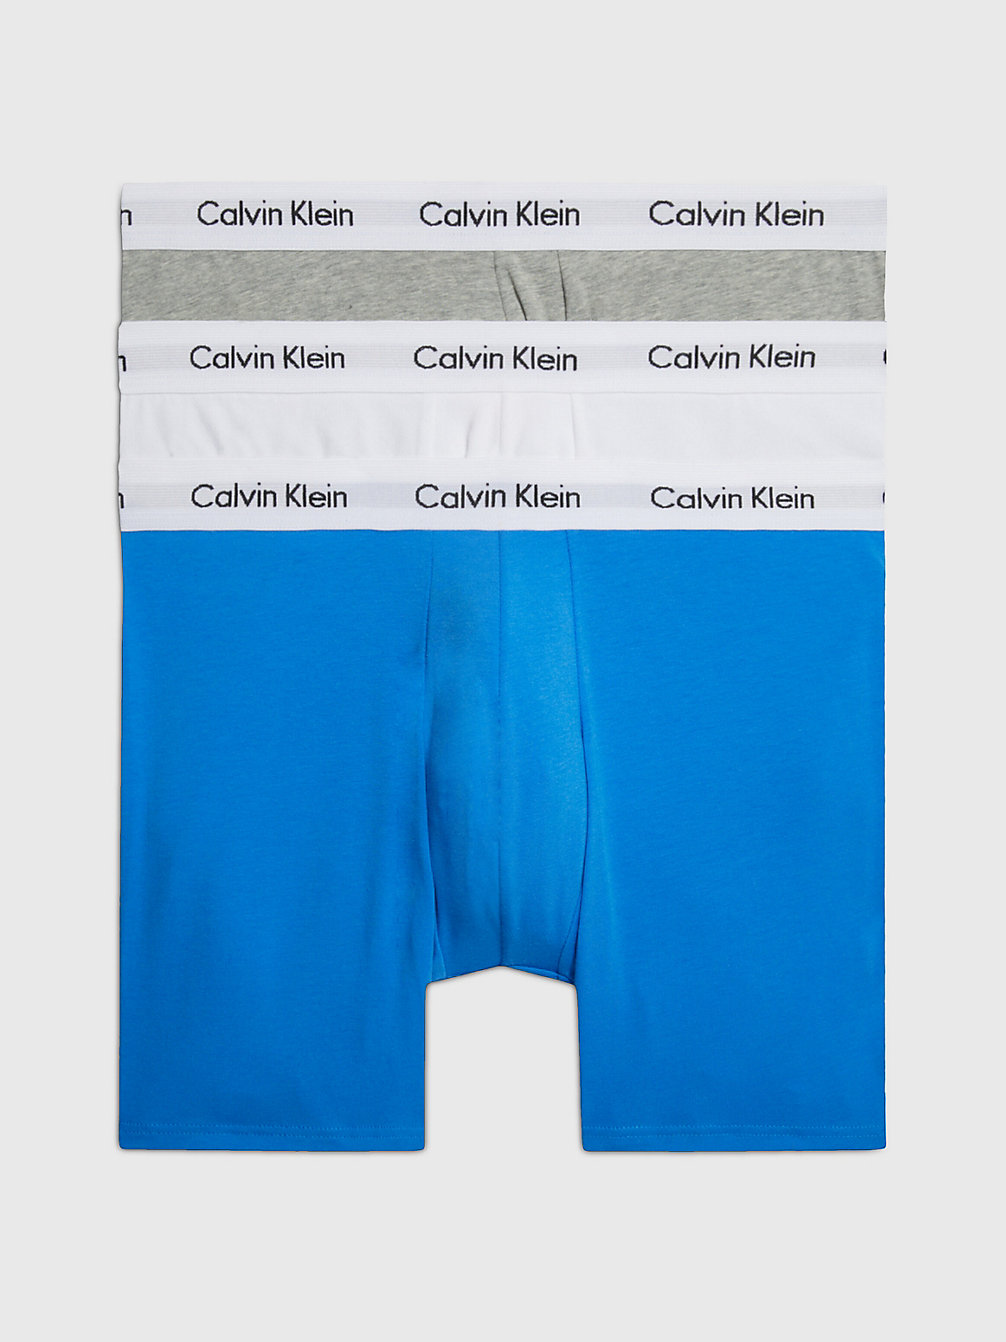 GRY HTHR, WHT, PALACE BLUE W/ WH WB Boxer Aderenti Lunghi In Confezione Da 3 - Cotton Stretch undefined uomo Calvin Klein